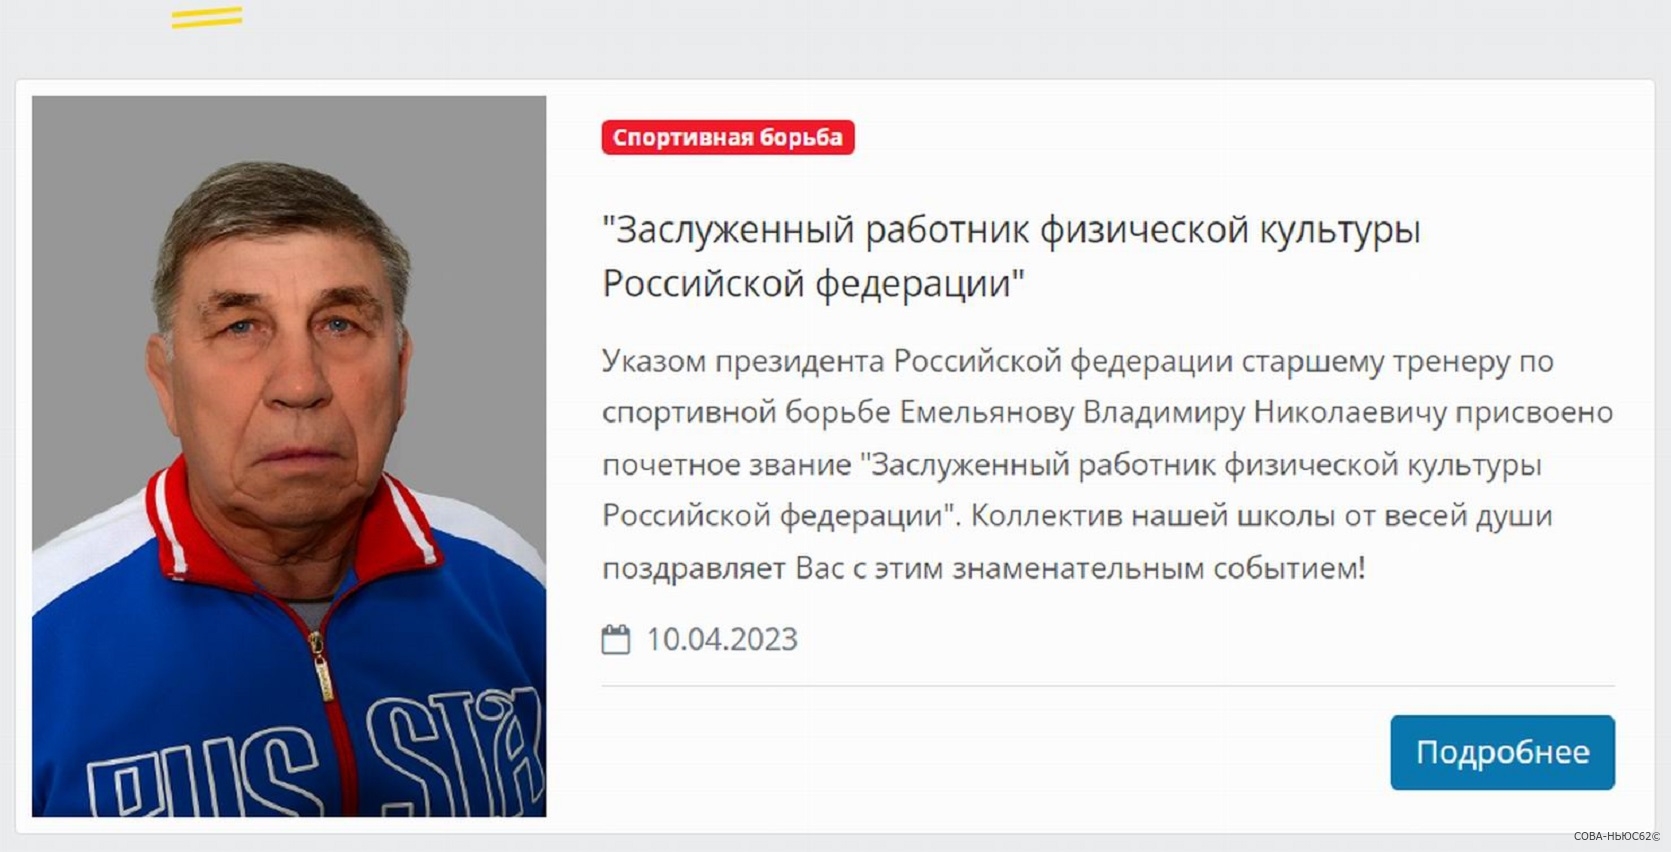 Президент Владимир Путин присвоил почетное звание рязанскому тренеру